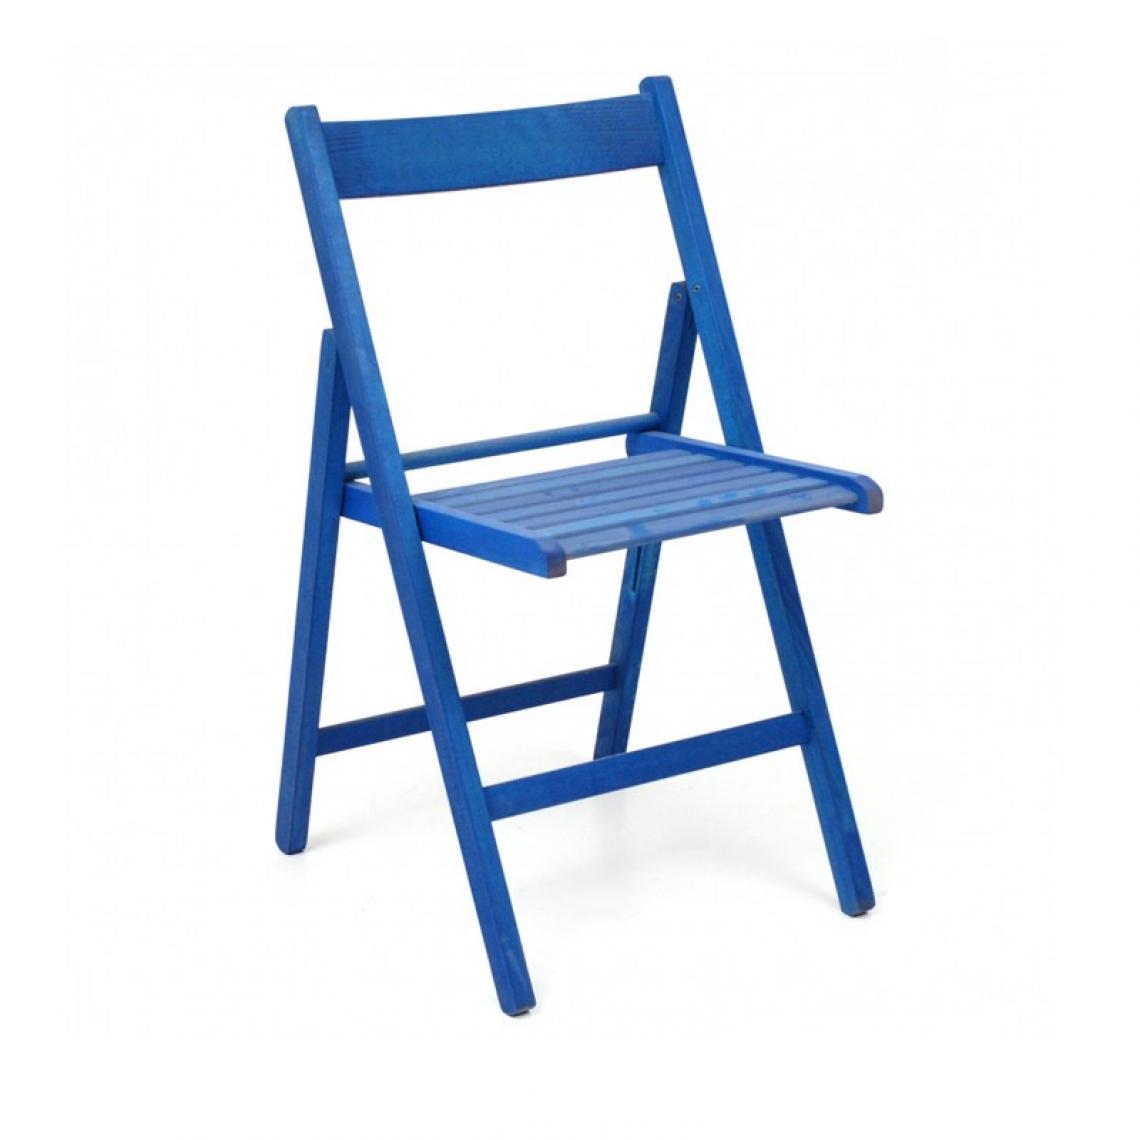 Webmarketpoint - Chaise pliante en hêtre bleu de haute qualité 43x48xh.79 cm - Chaises